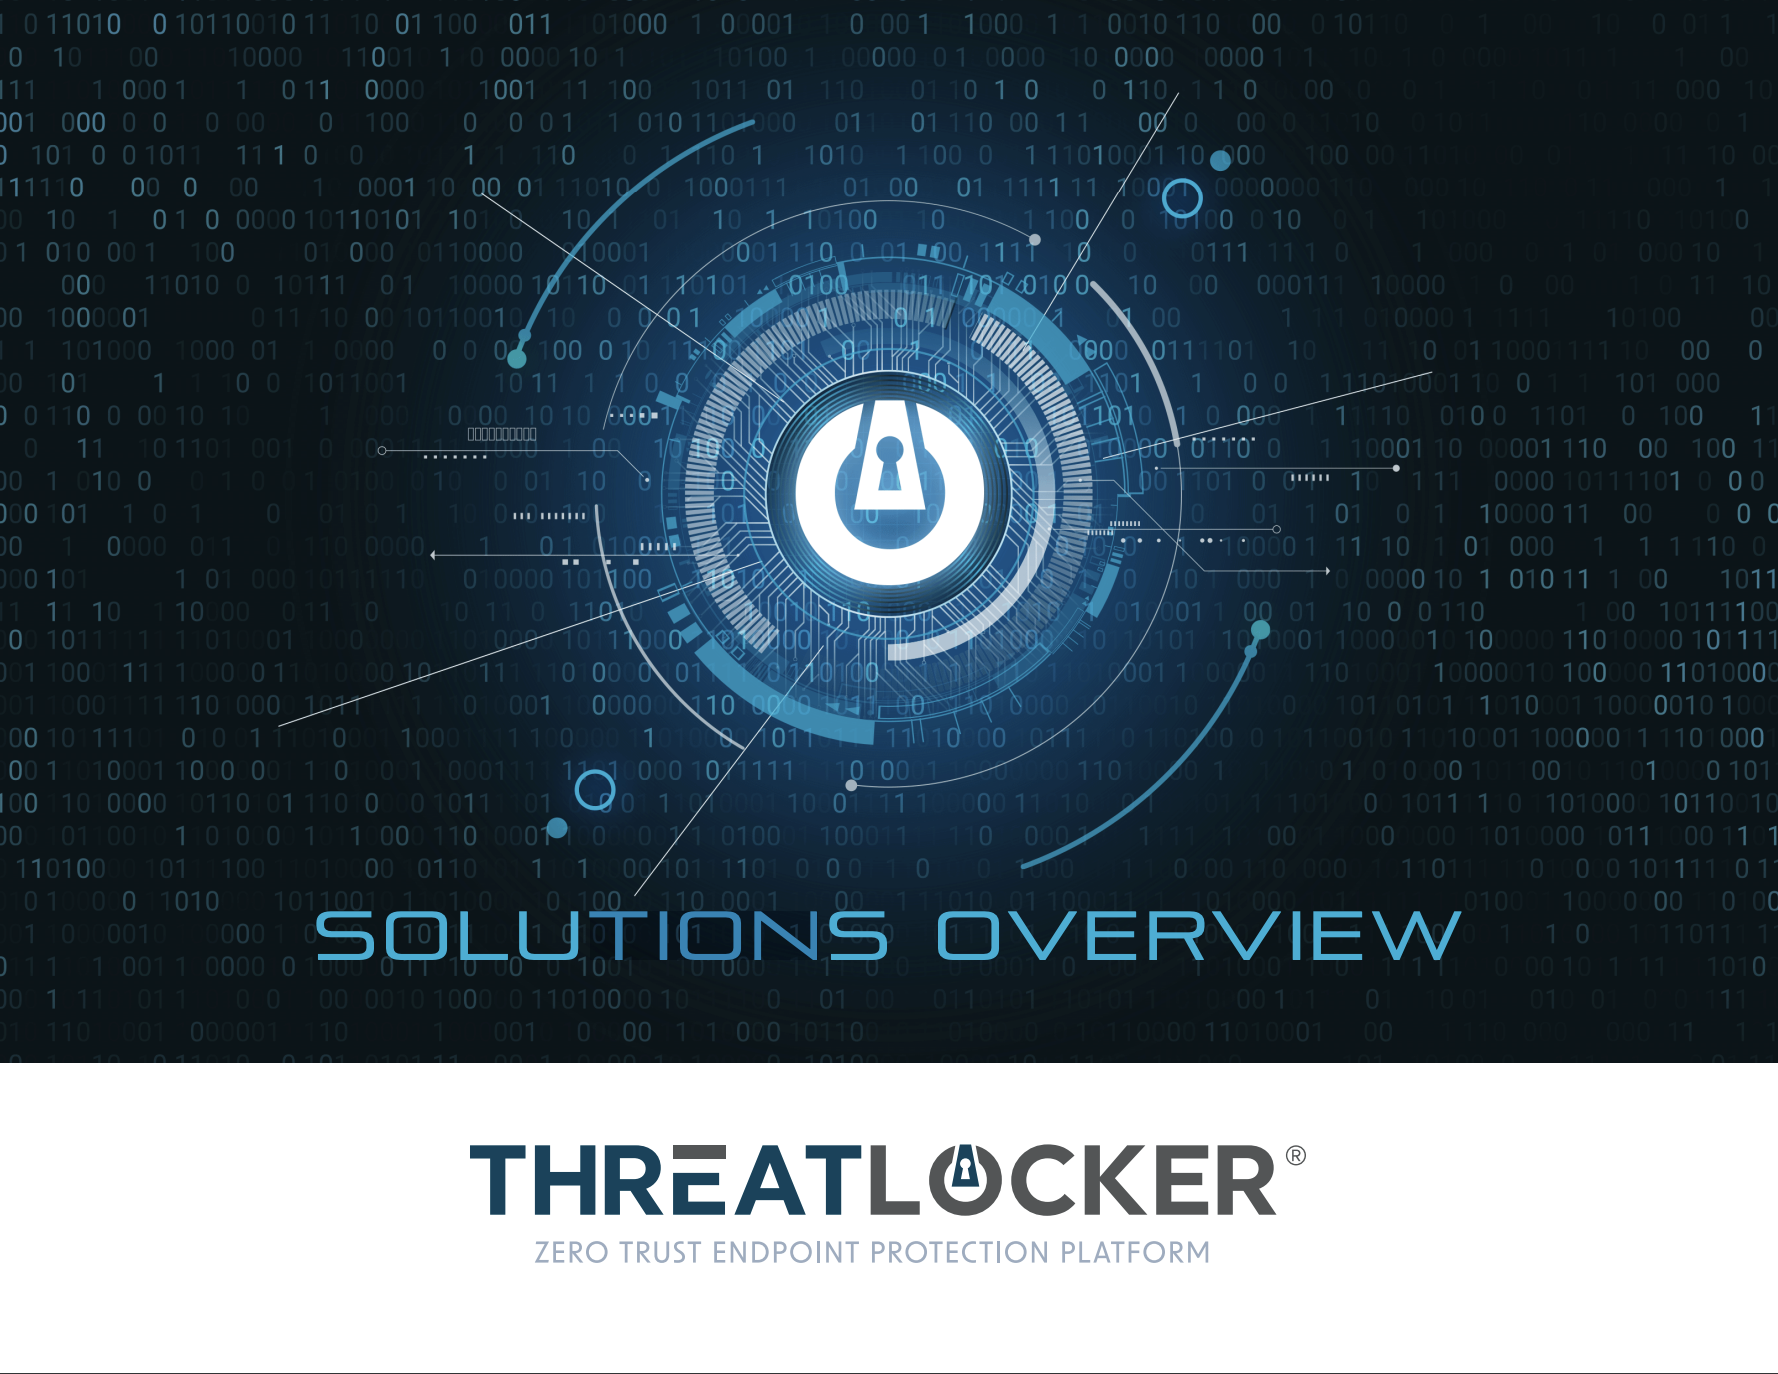 ThreatLocker: Solutions Overview